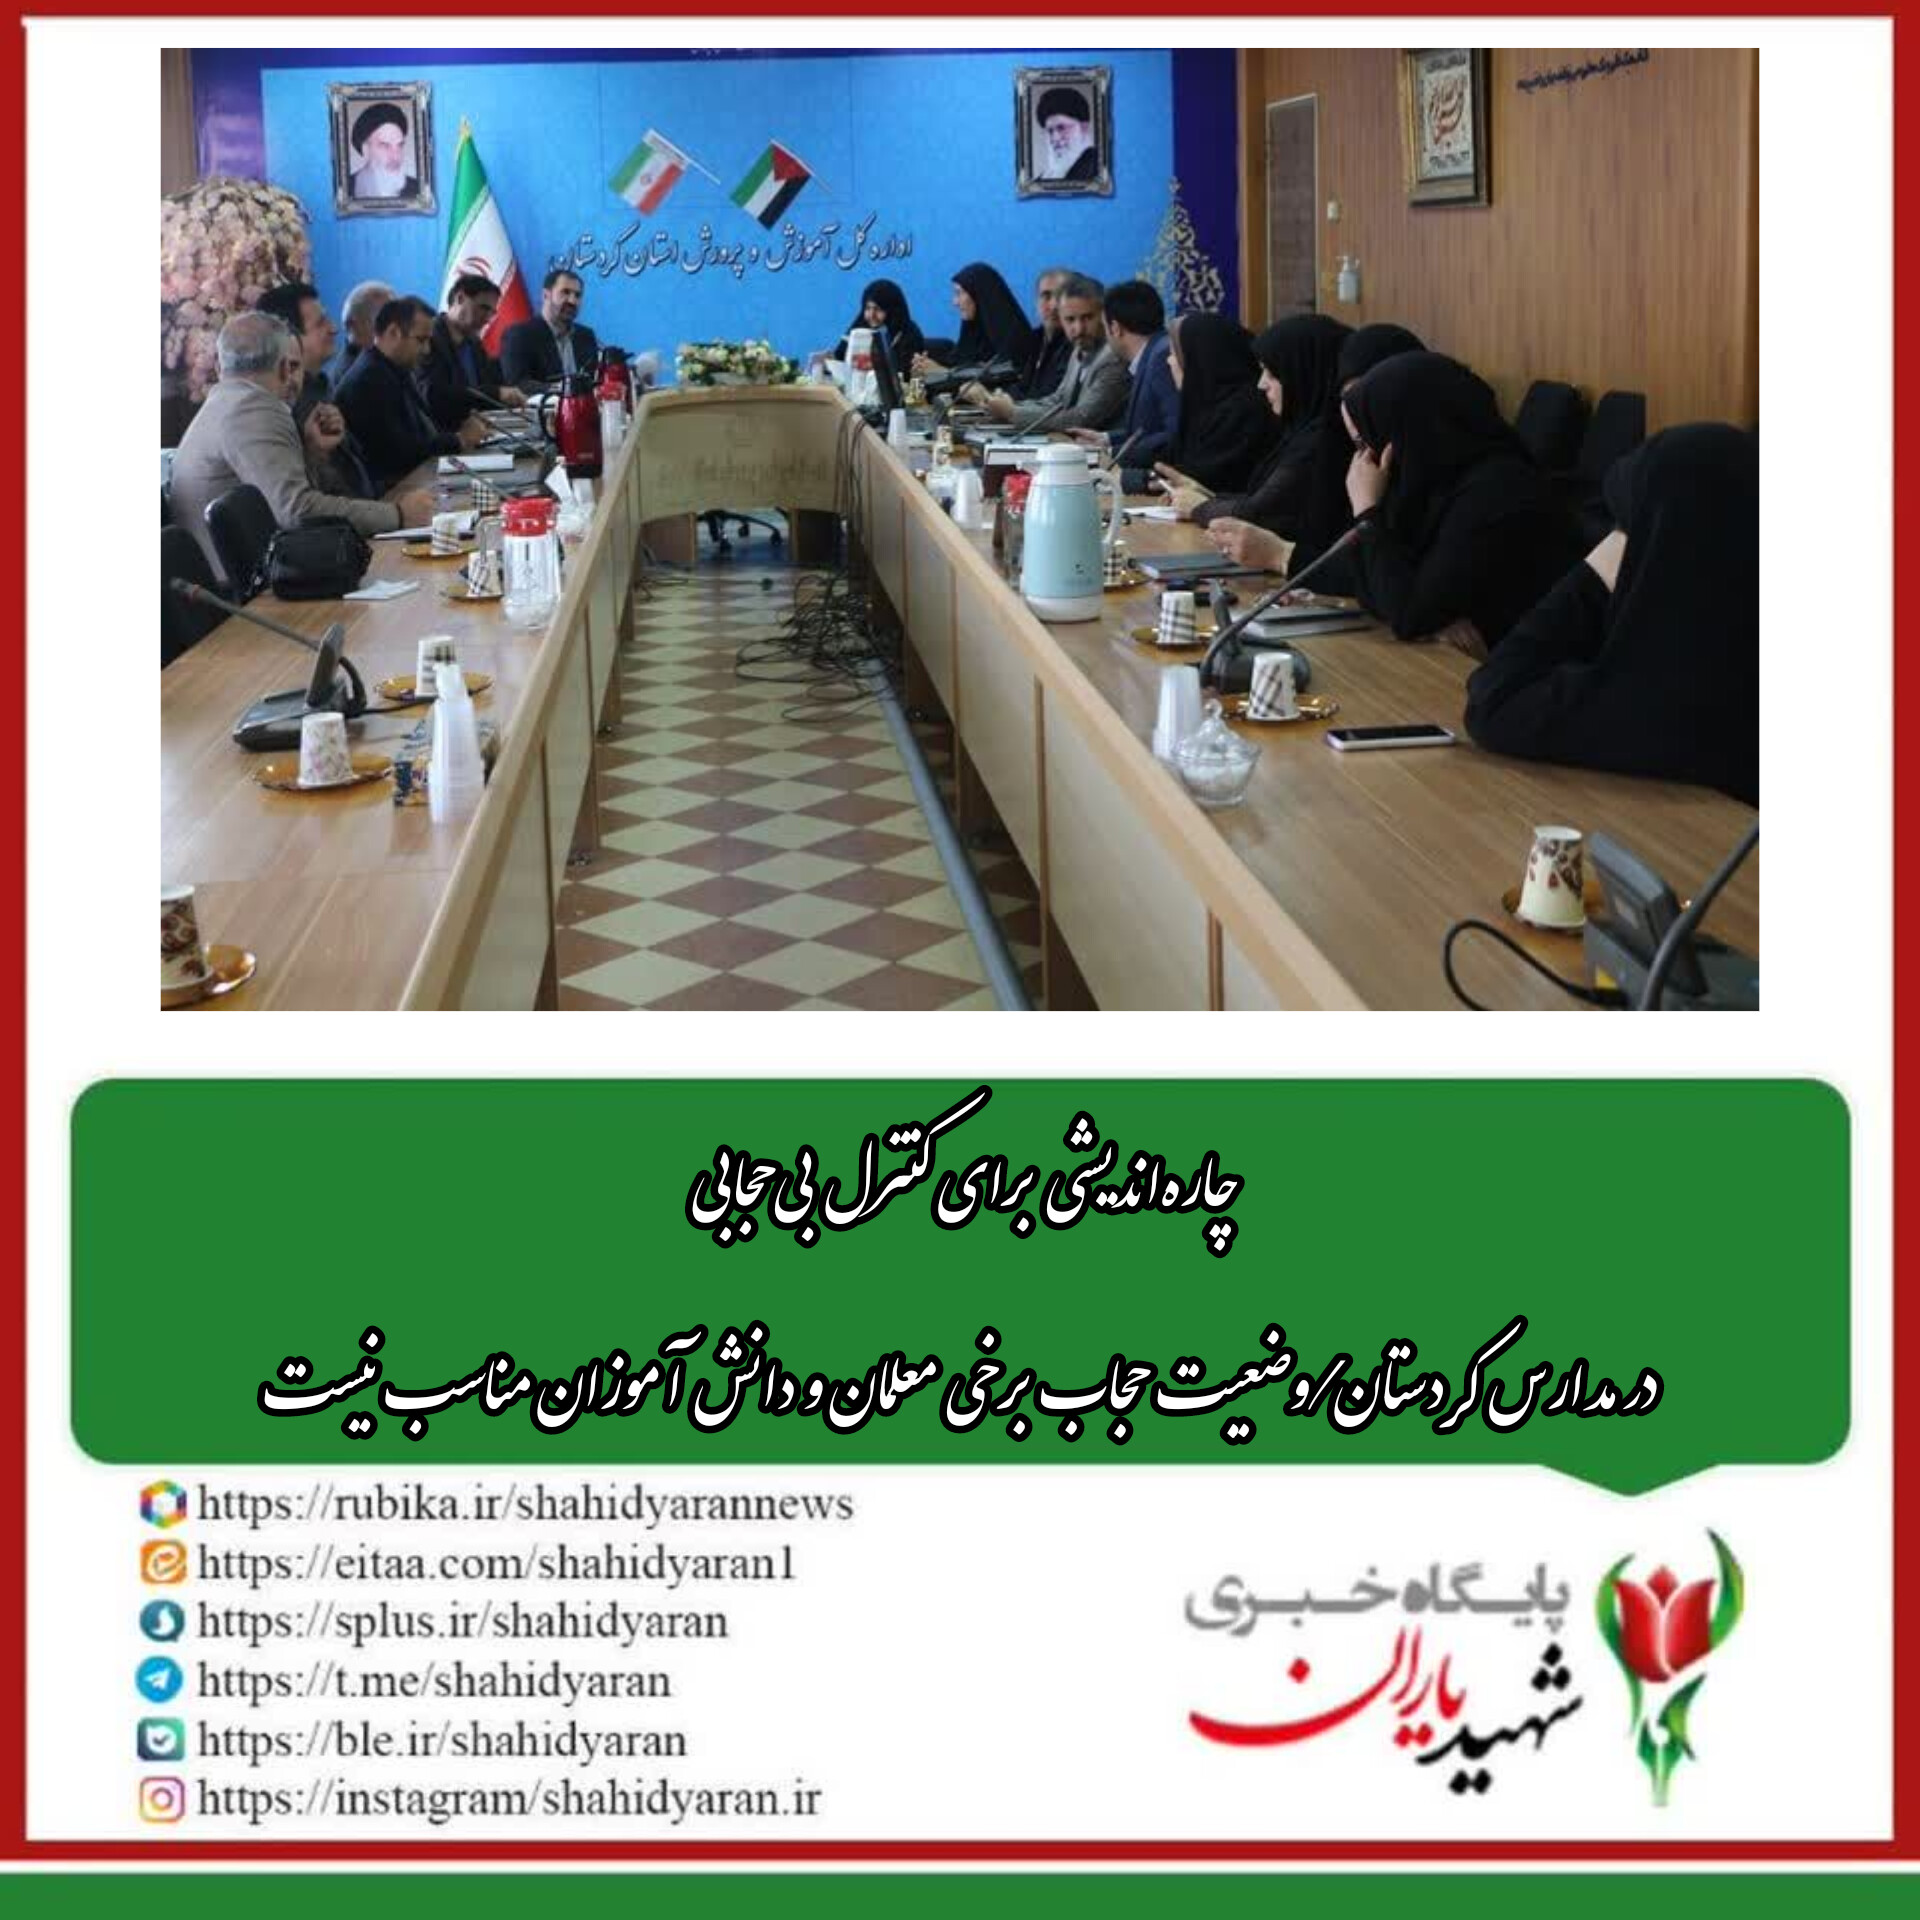 در جلسه شورای امر به معروف آموزش و پرورش کردستان انجام شد؛